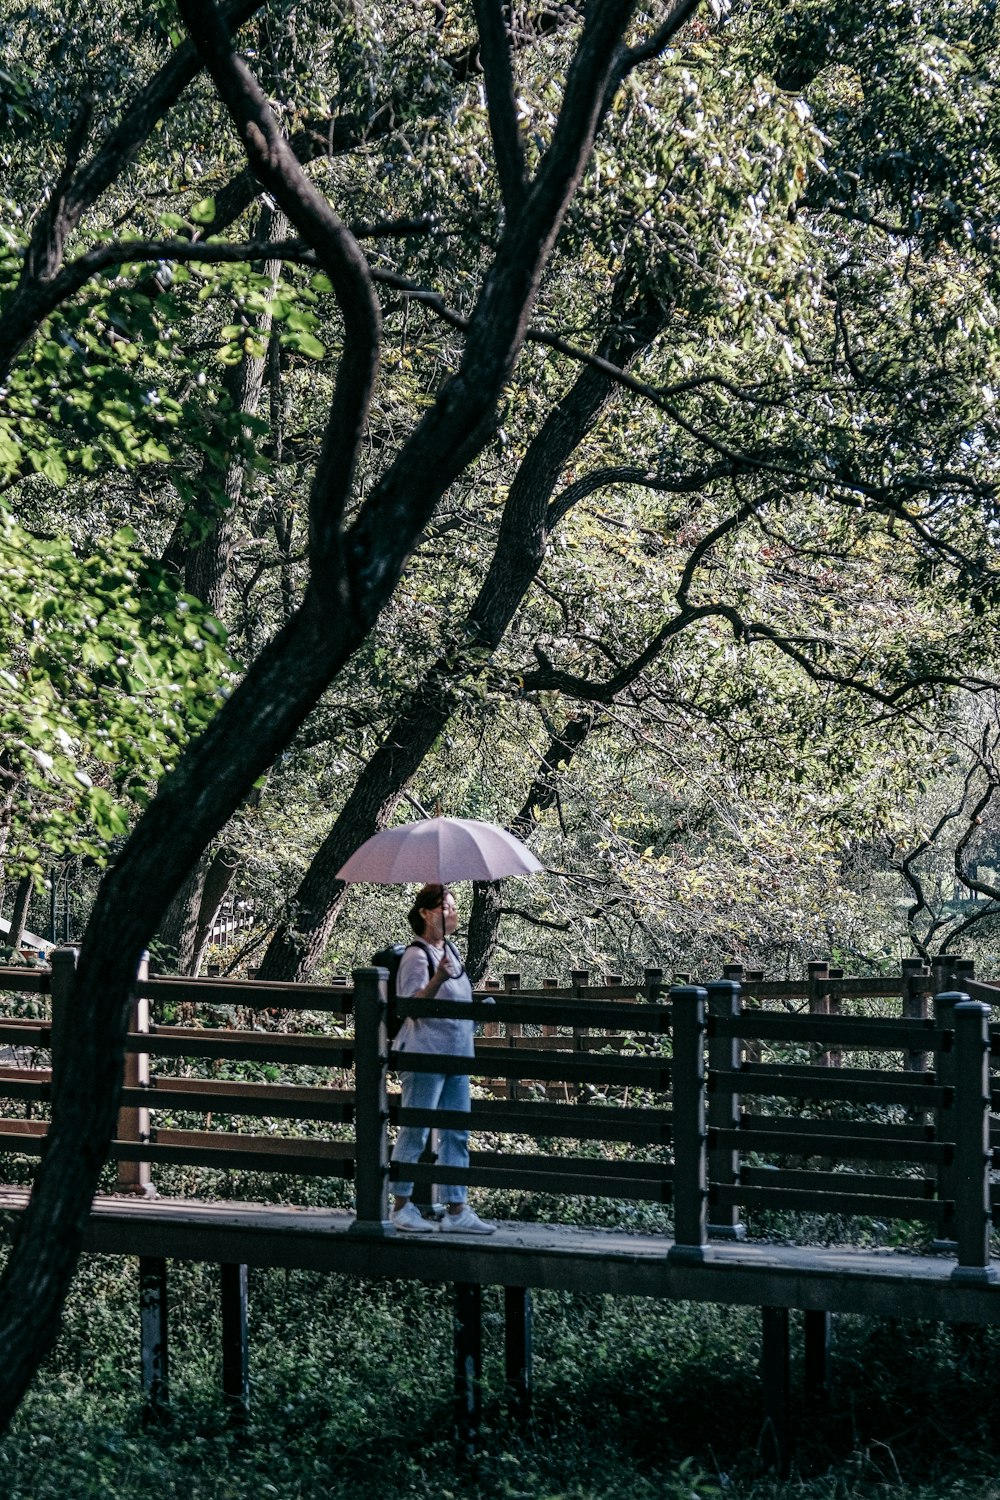 Una persona parada en un banco sosteniendo un paraguas